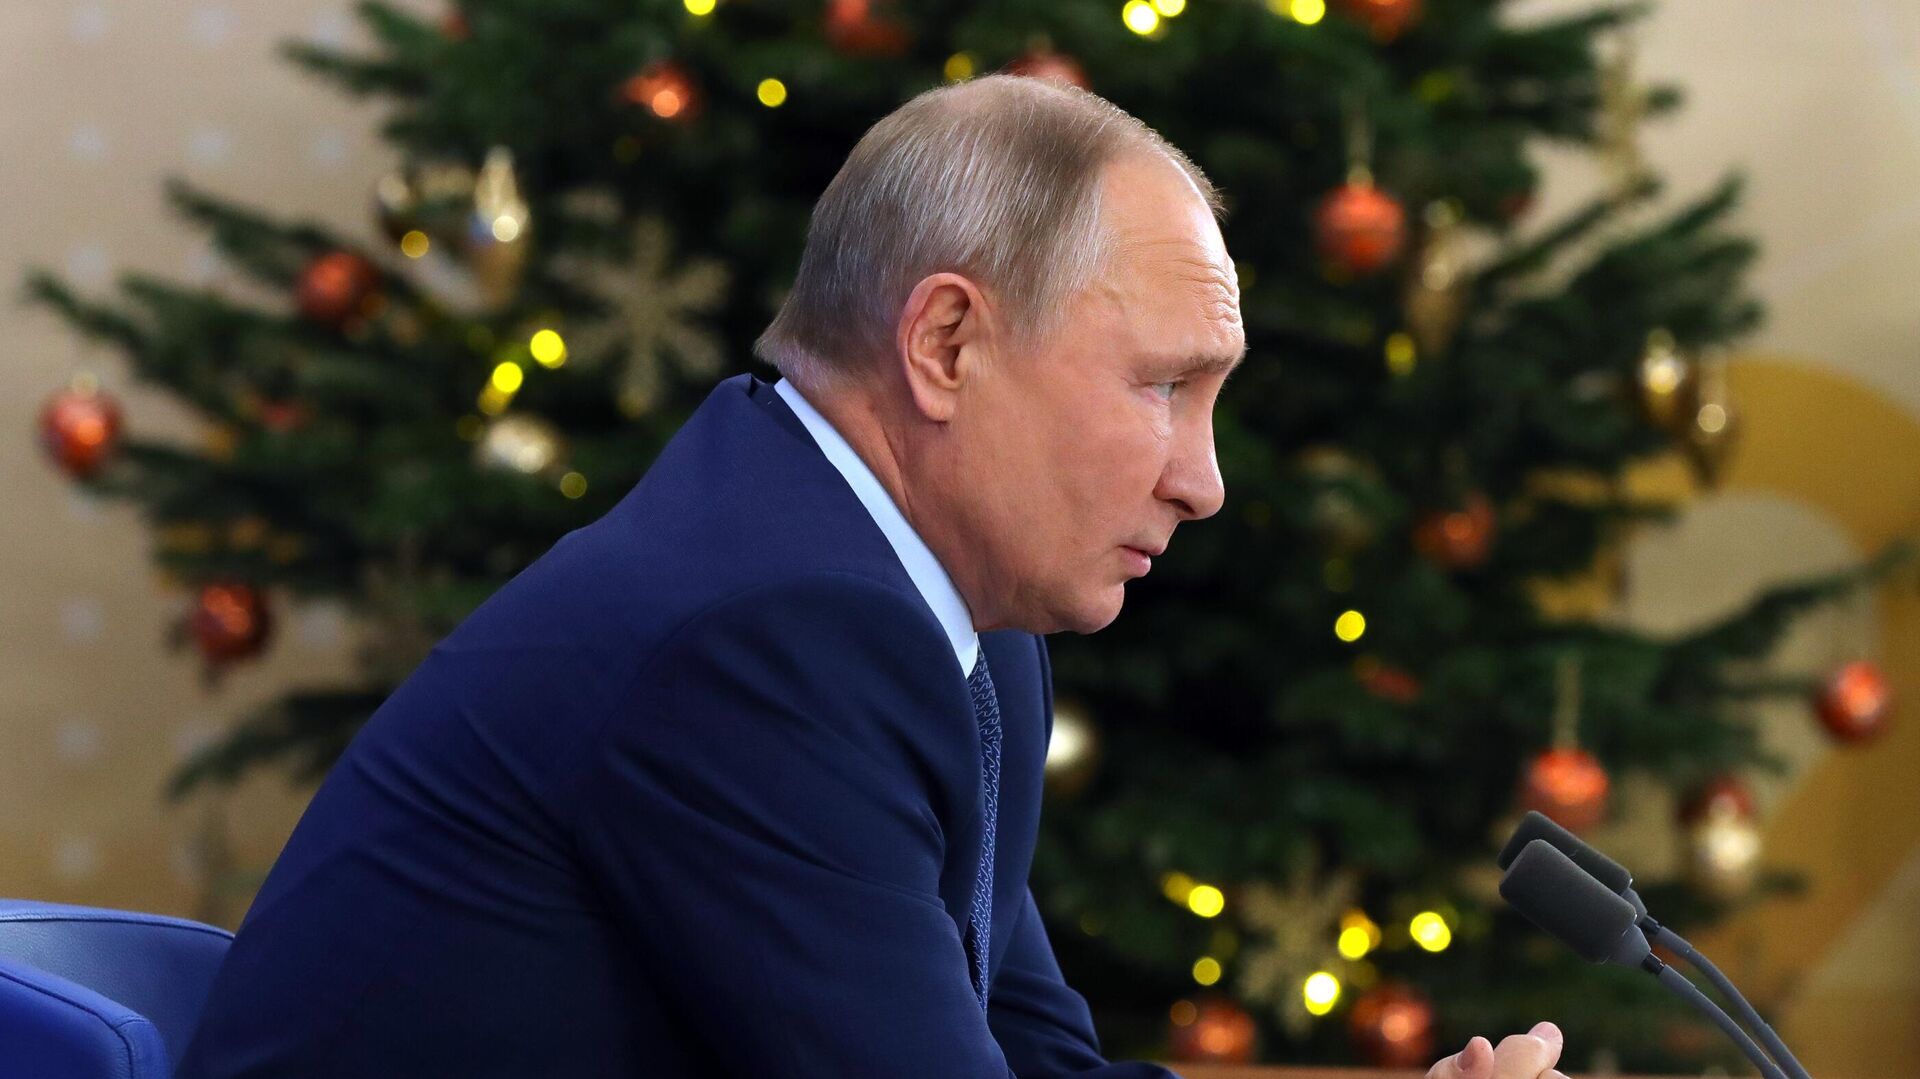 Что скажет президент Путин в своем последнем новогоднем обращении к россиянам 31 декабря 2007 года